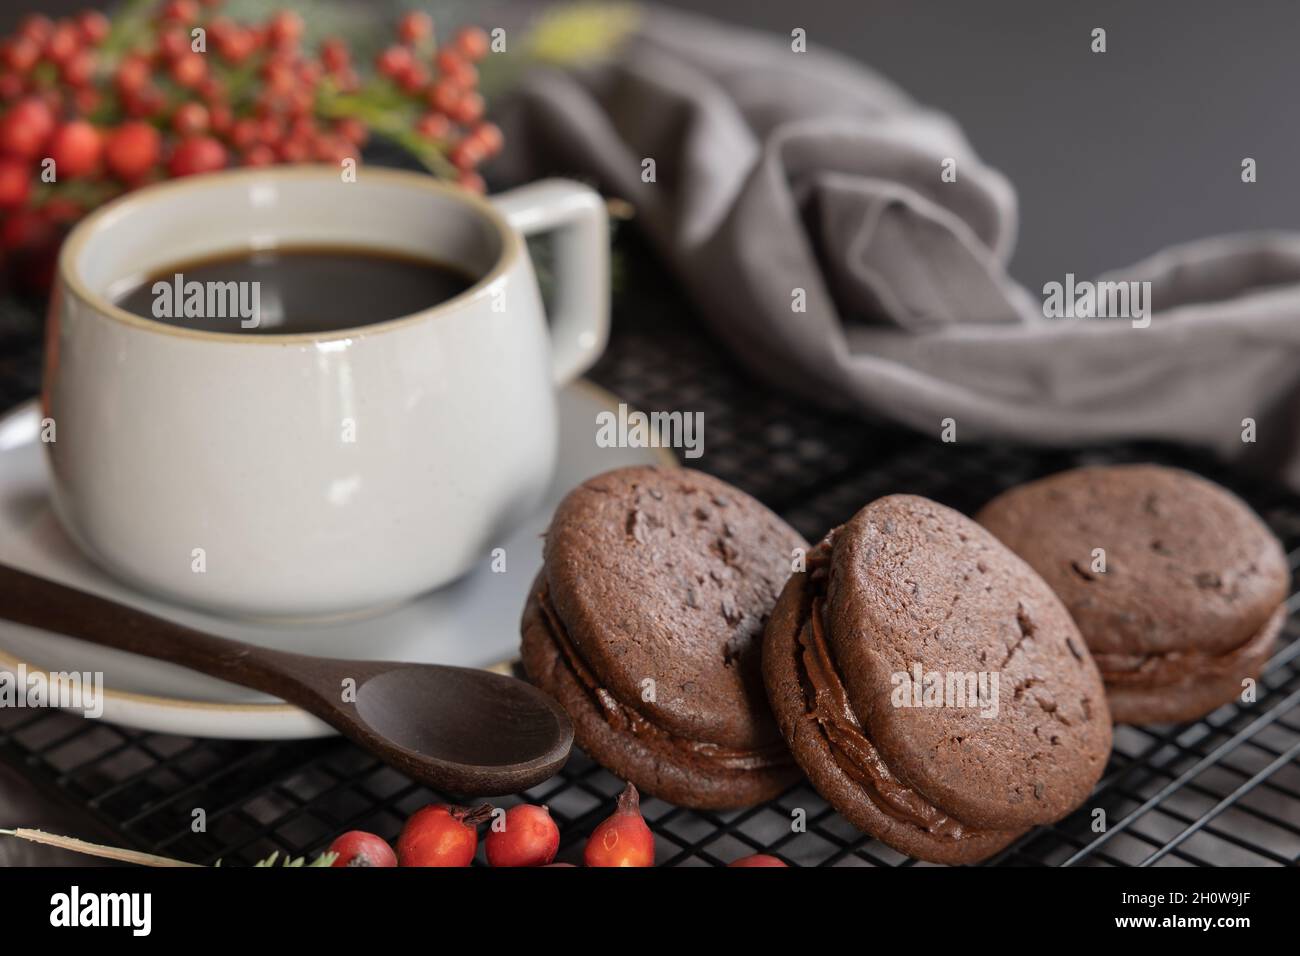 Gâteau de Noël de biscuits sandwich au café et au chocolat avec bordure de baies de noël et de quartiers à feuilles persistantes Banque D'Images